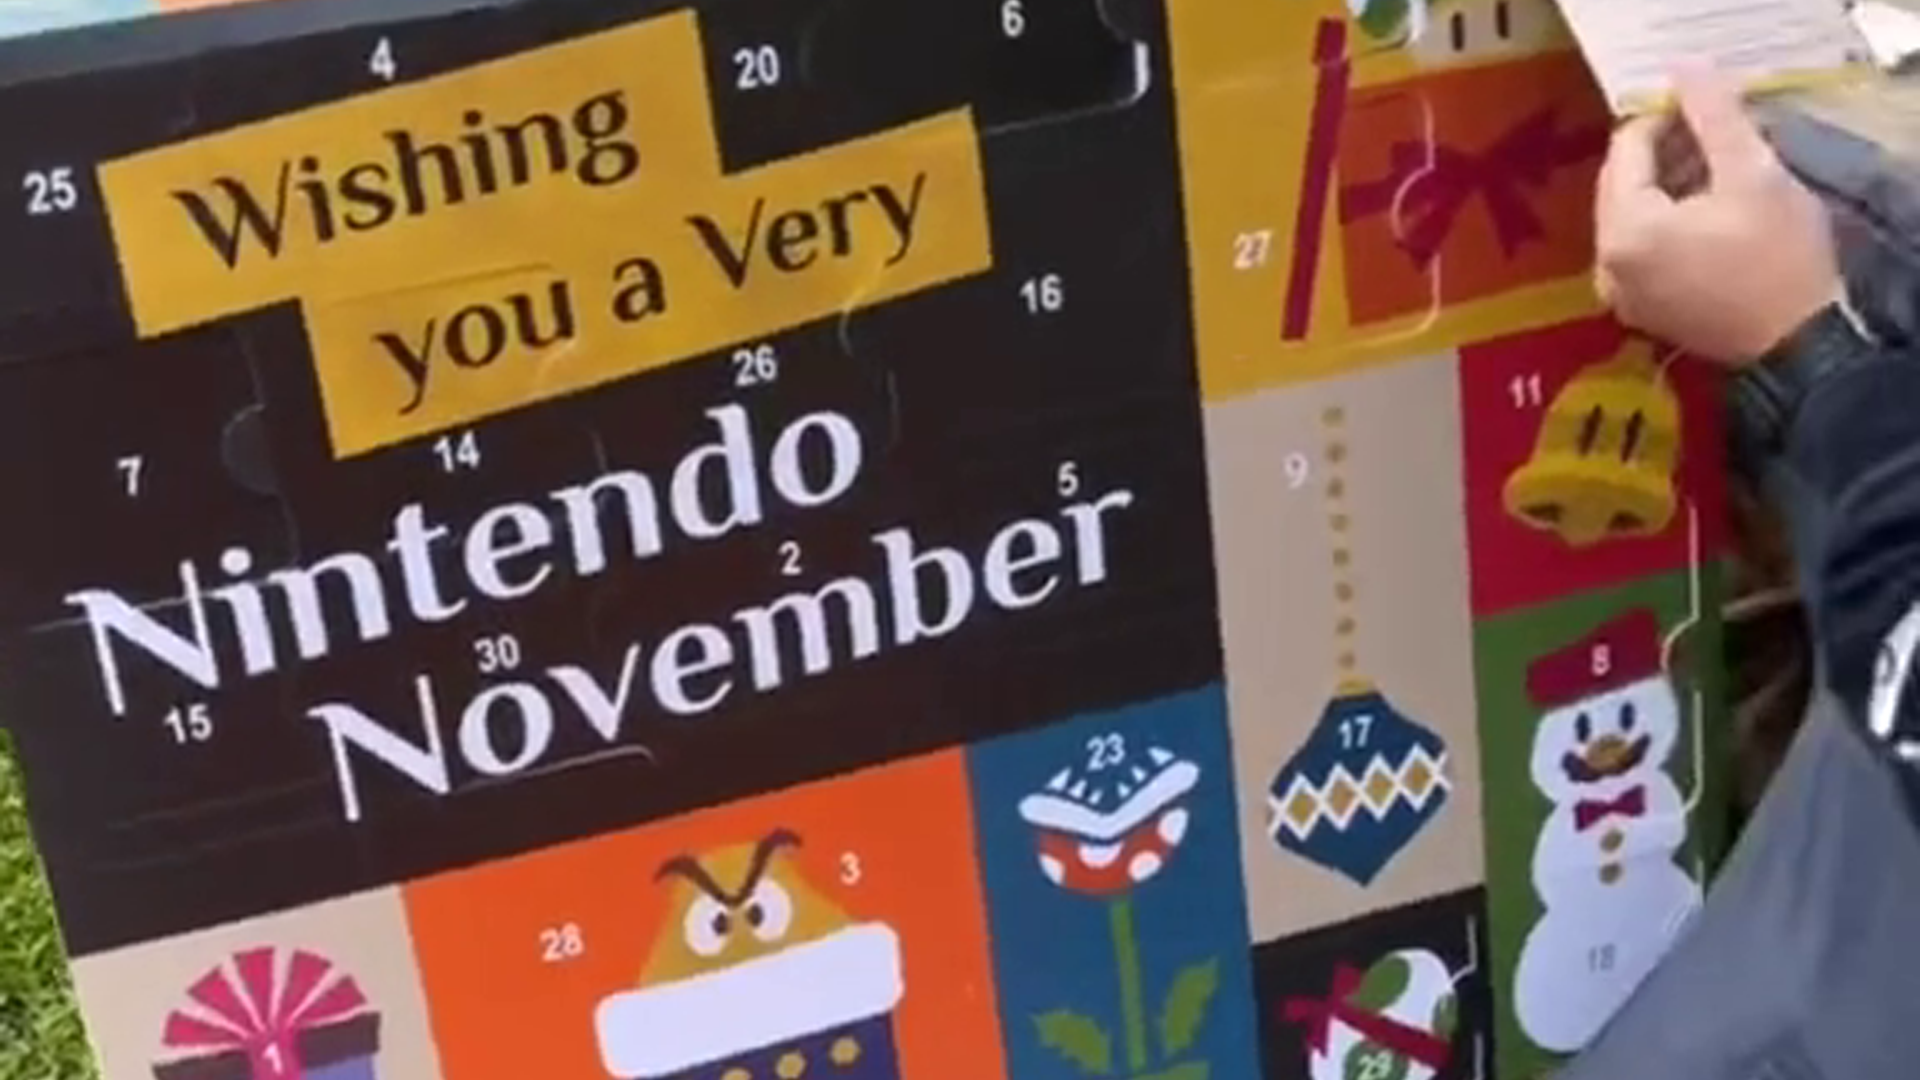 Nintendo November advent calendar